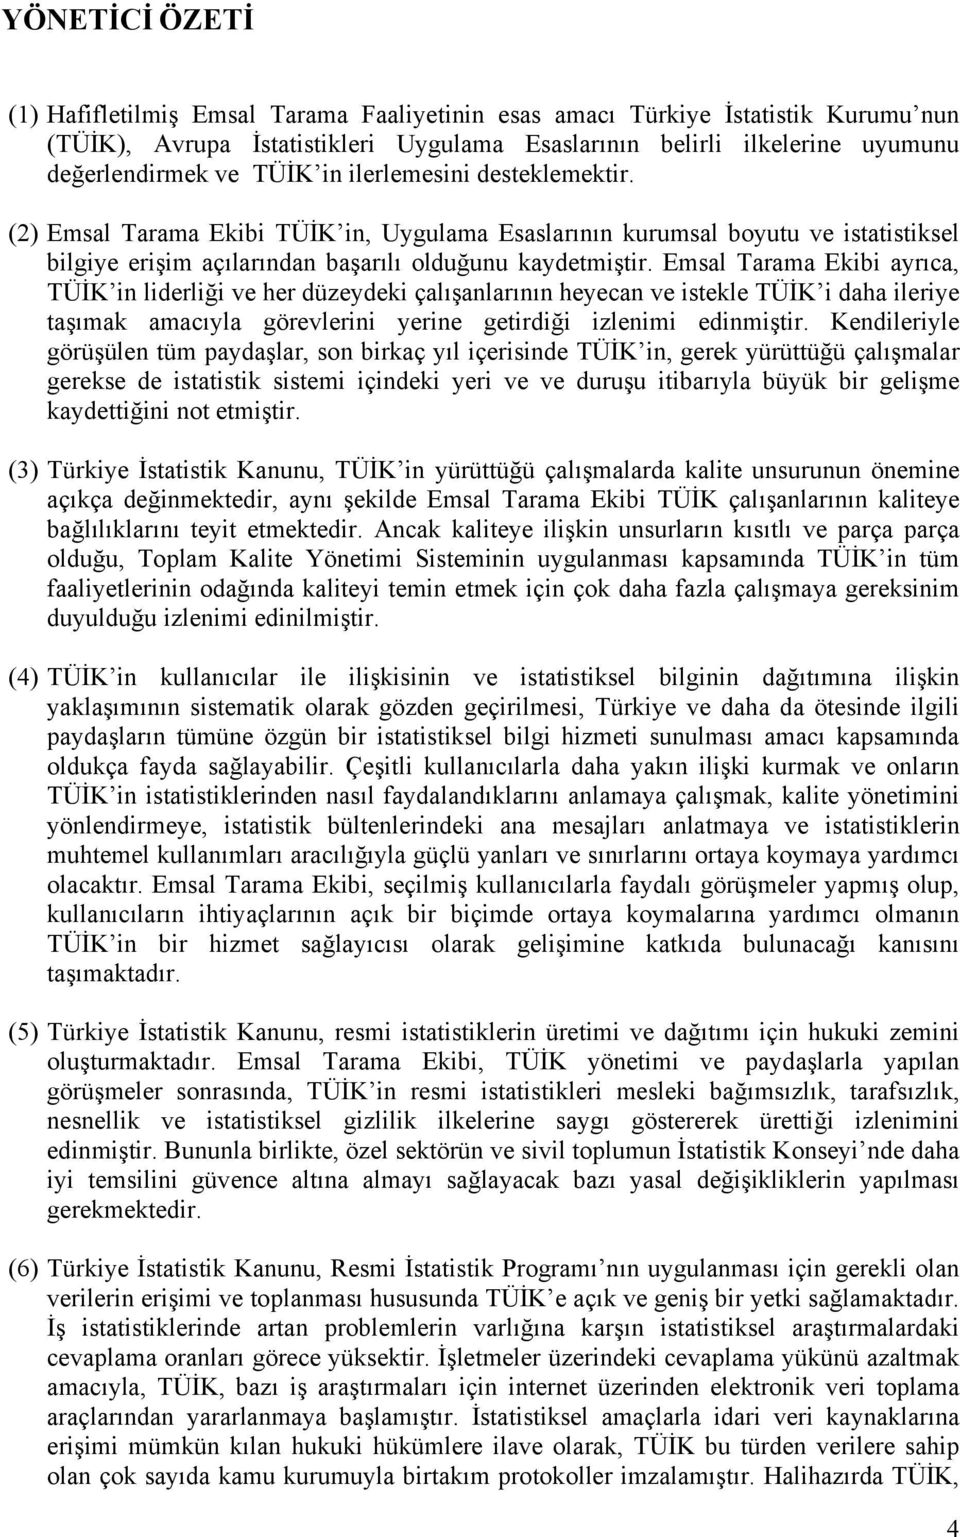 Emsal Tarama Ekibi ayrıca, TÜİK in liderliği ve her düzeydeki çalışanlarının heyecan ve istekle TÜİK i daha ileriye taşımak amacıyla görevlerini yerine getirdiği izlenimi edinmiştir.